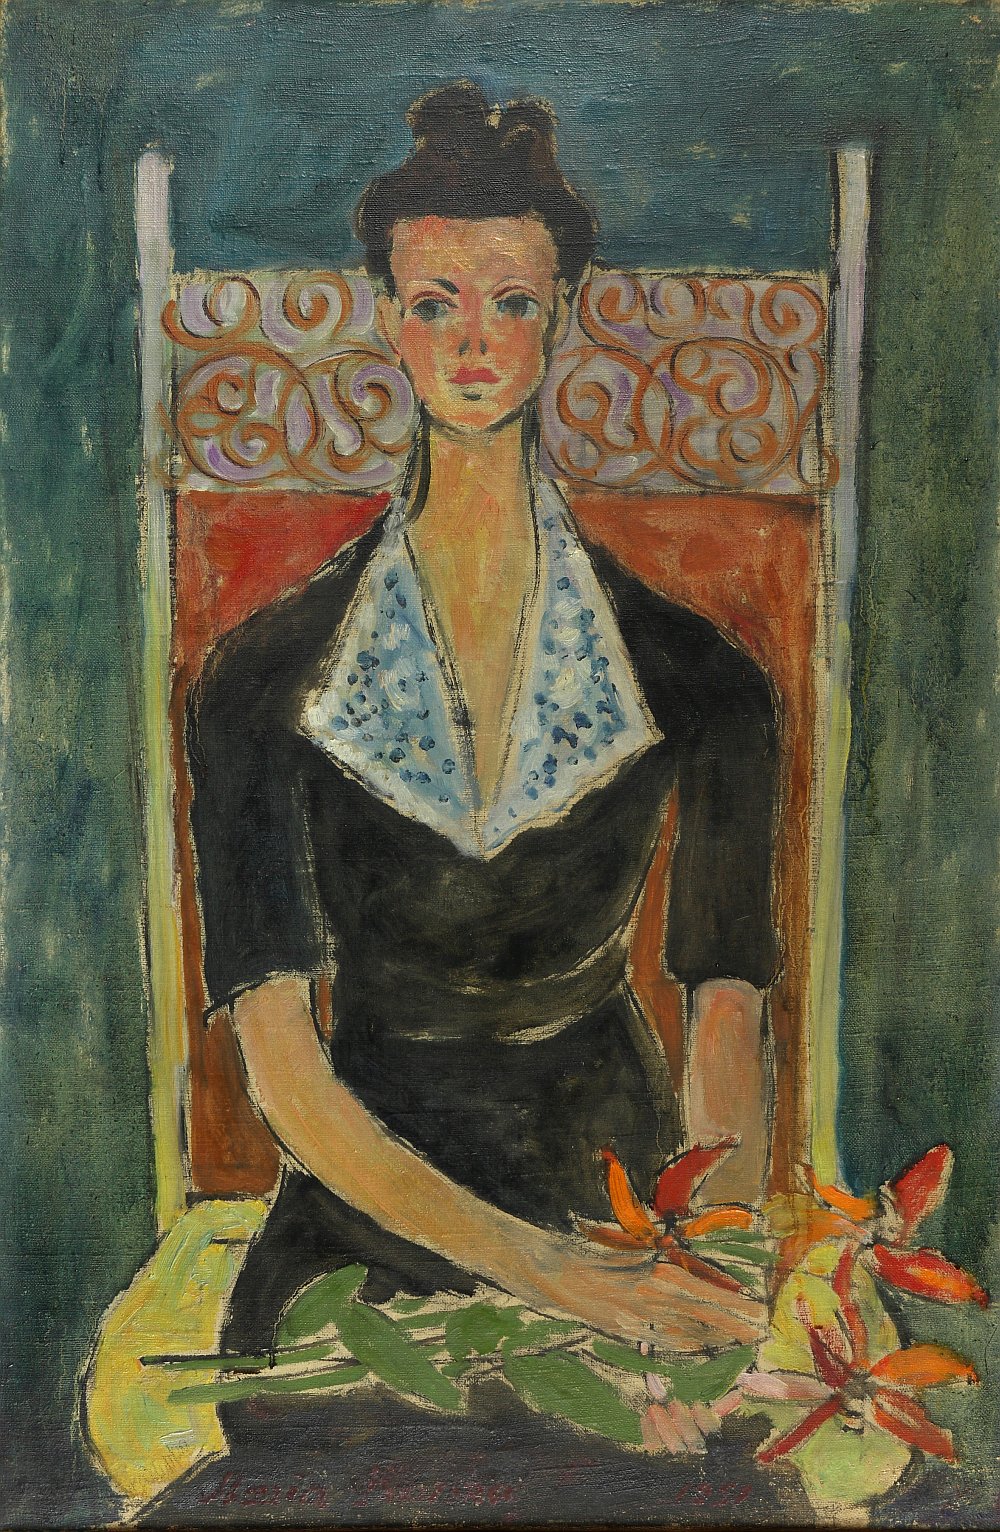 Maria Dawska (1909-1993), Portret literatki Lilian Seymour  1951, olej na płótnie w zbiorach Muzeum Zamkowego w Sandomierzu Fot. Marek Banaczek